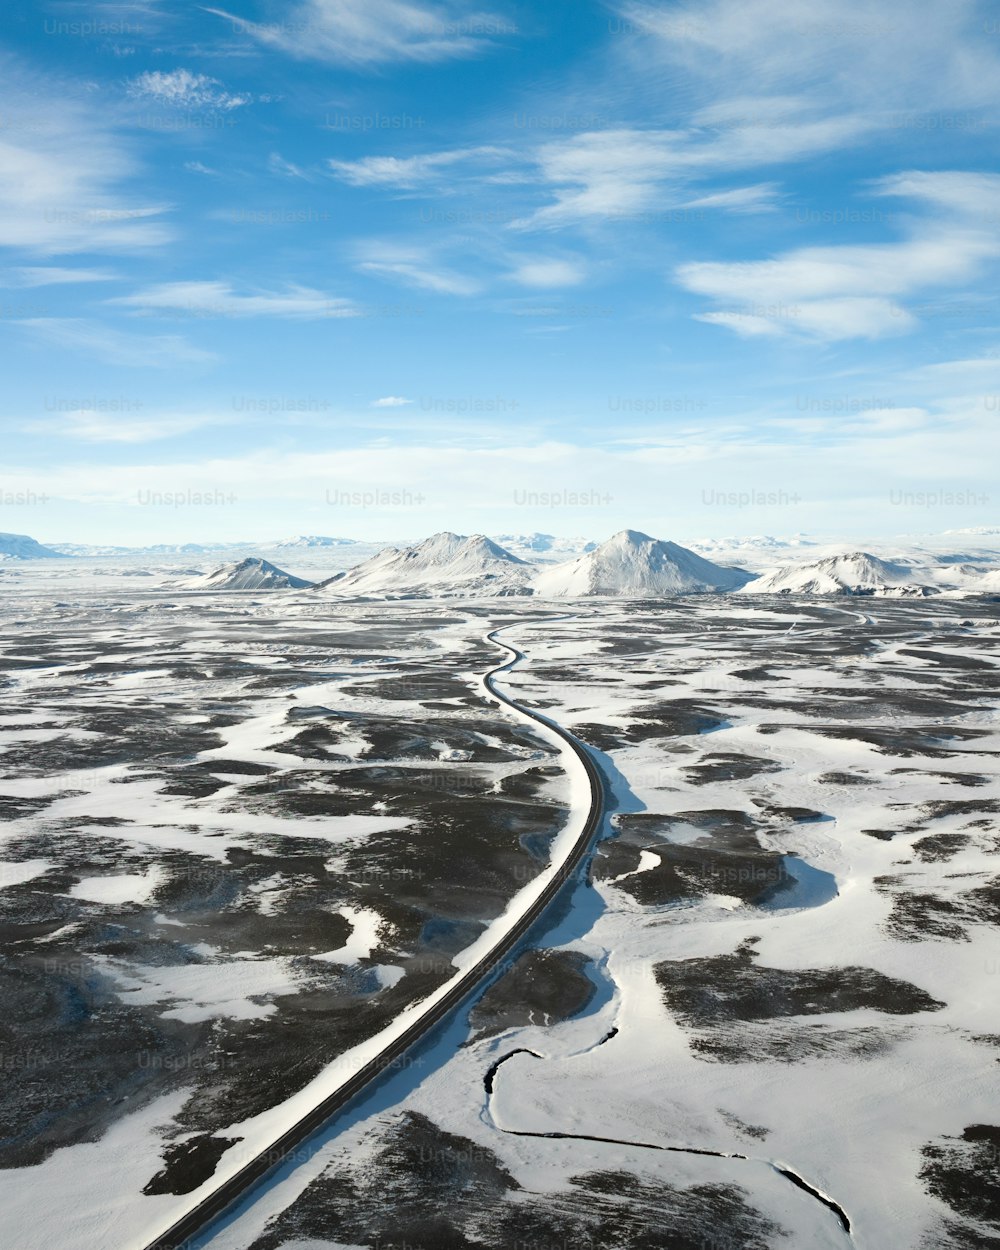 Eine Luftaufnahme eines Flusses, der durch eine schneebedeckte Landschaft fließt